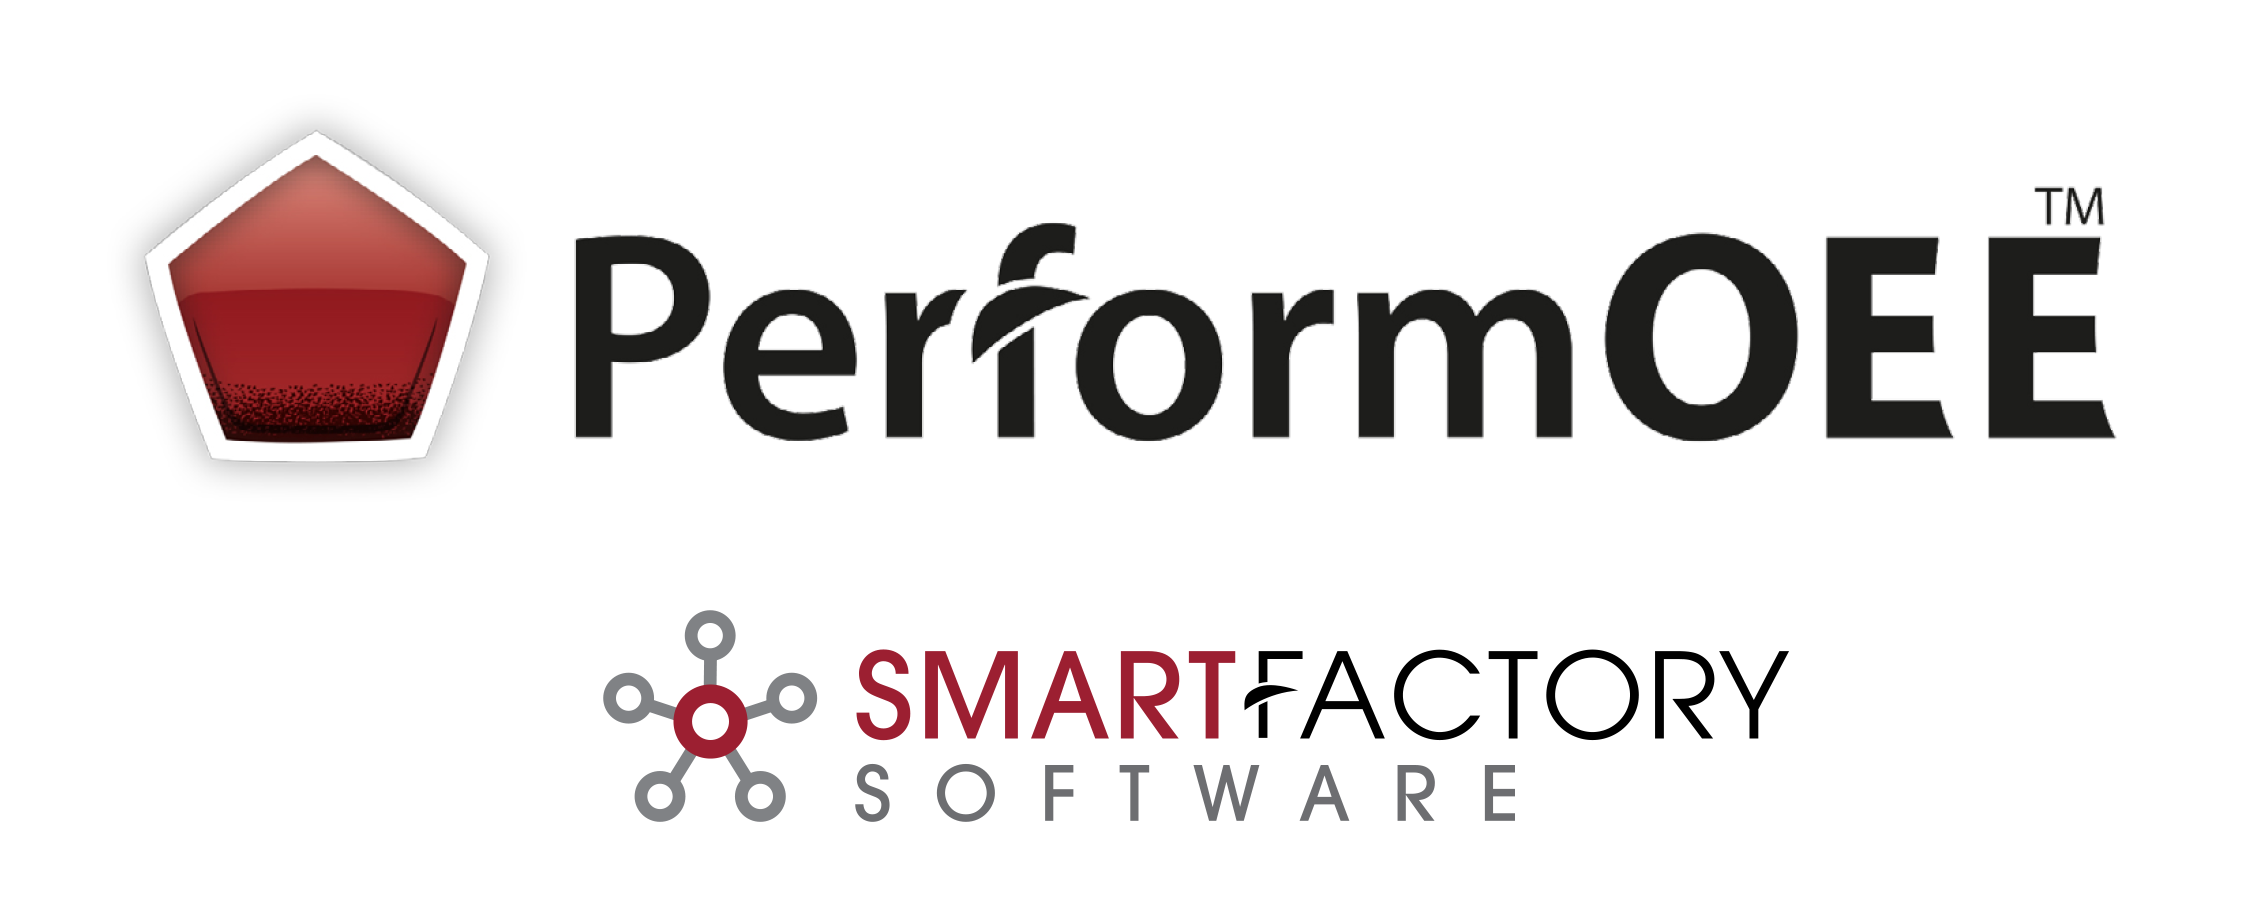 PerformOEE - Smart Factory OEE Software